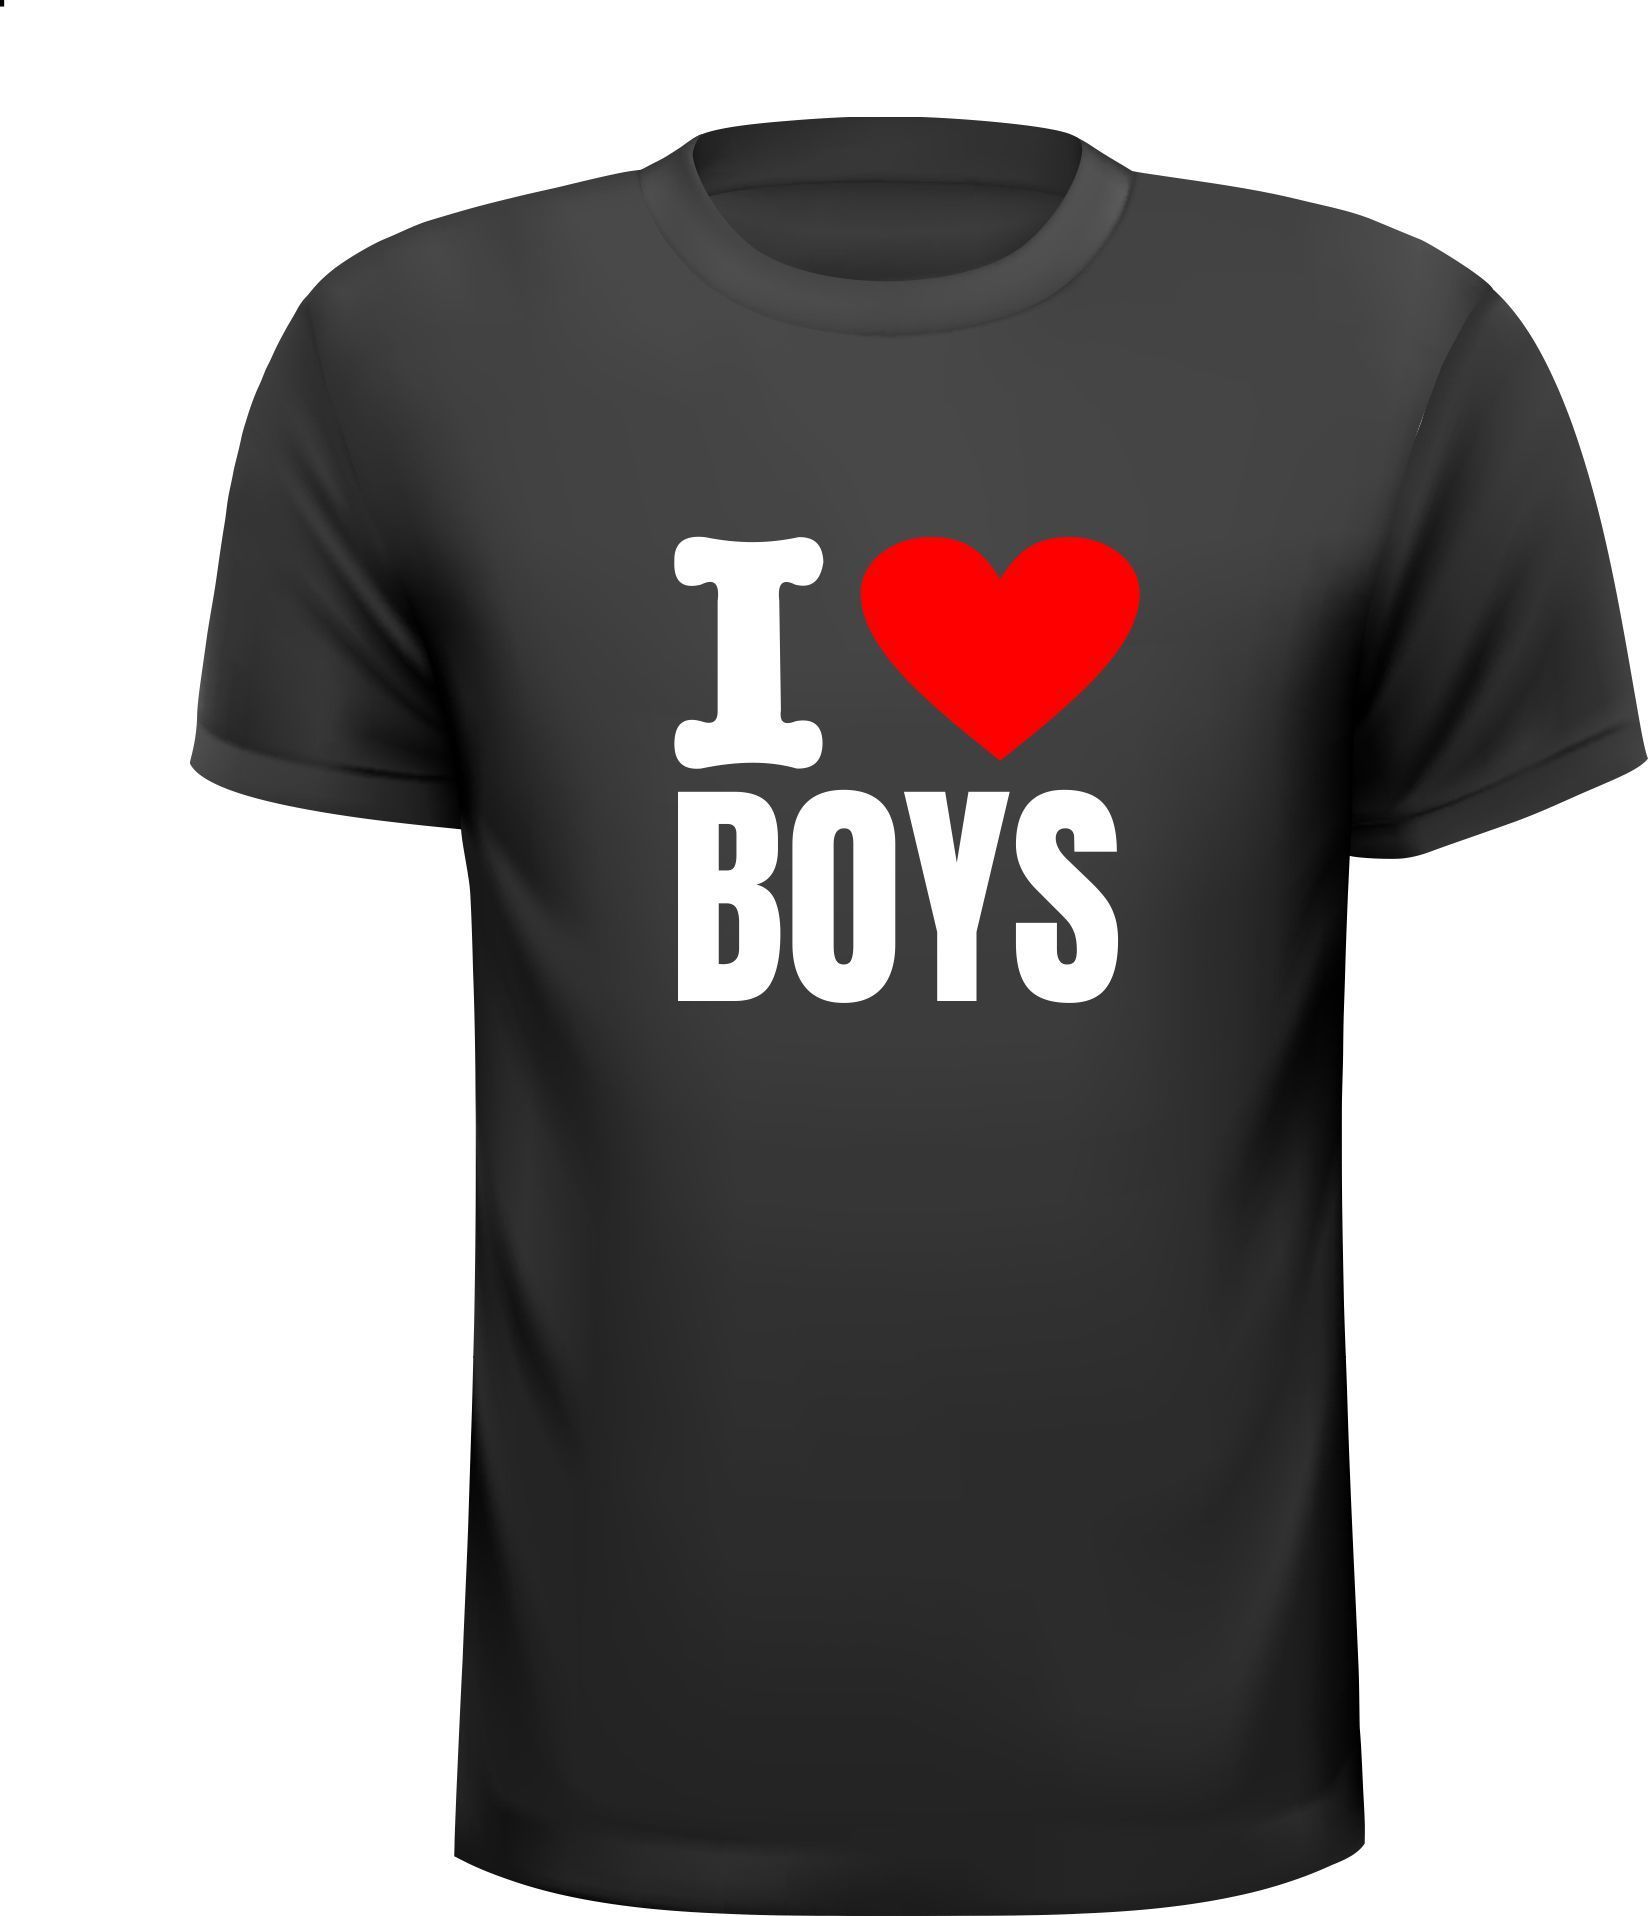 T-shirt i love boys